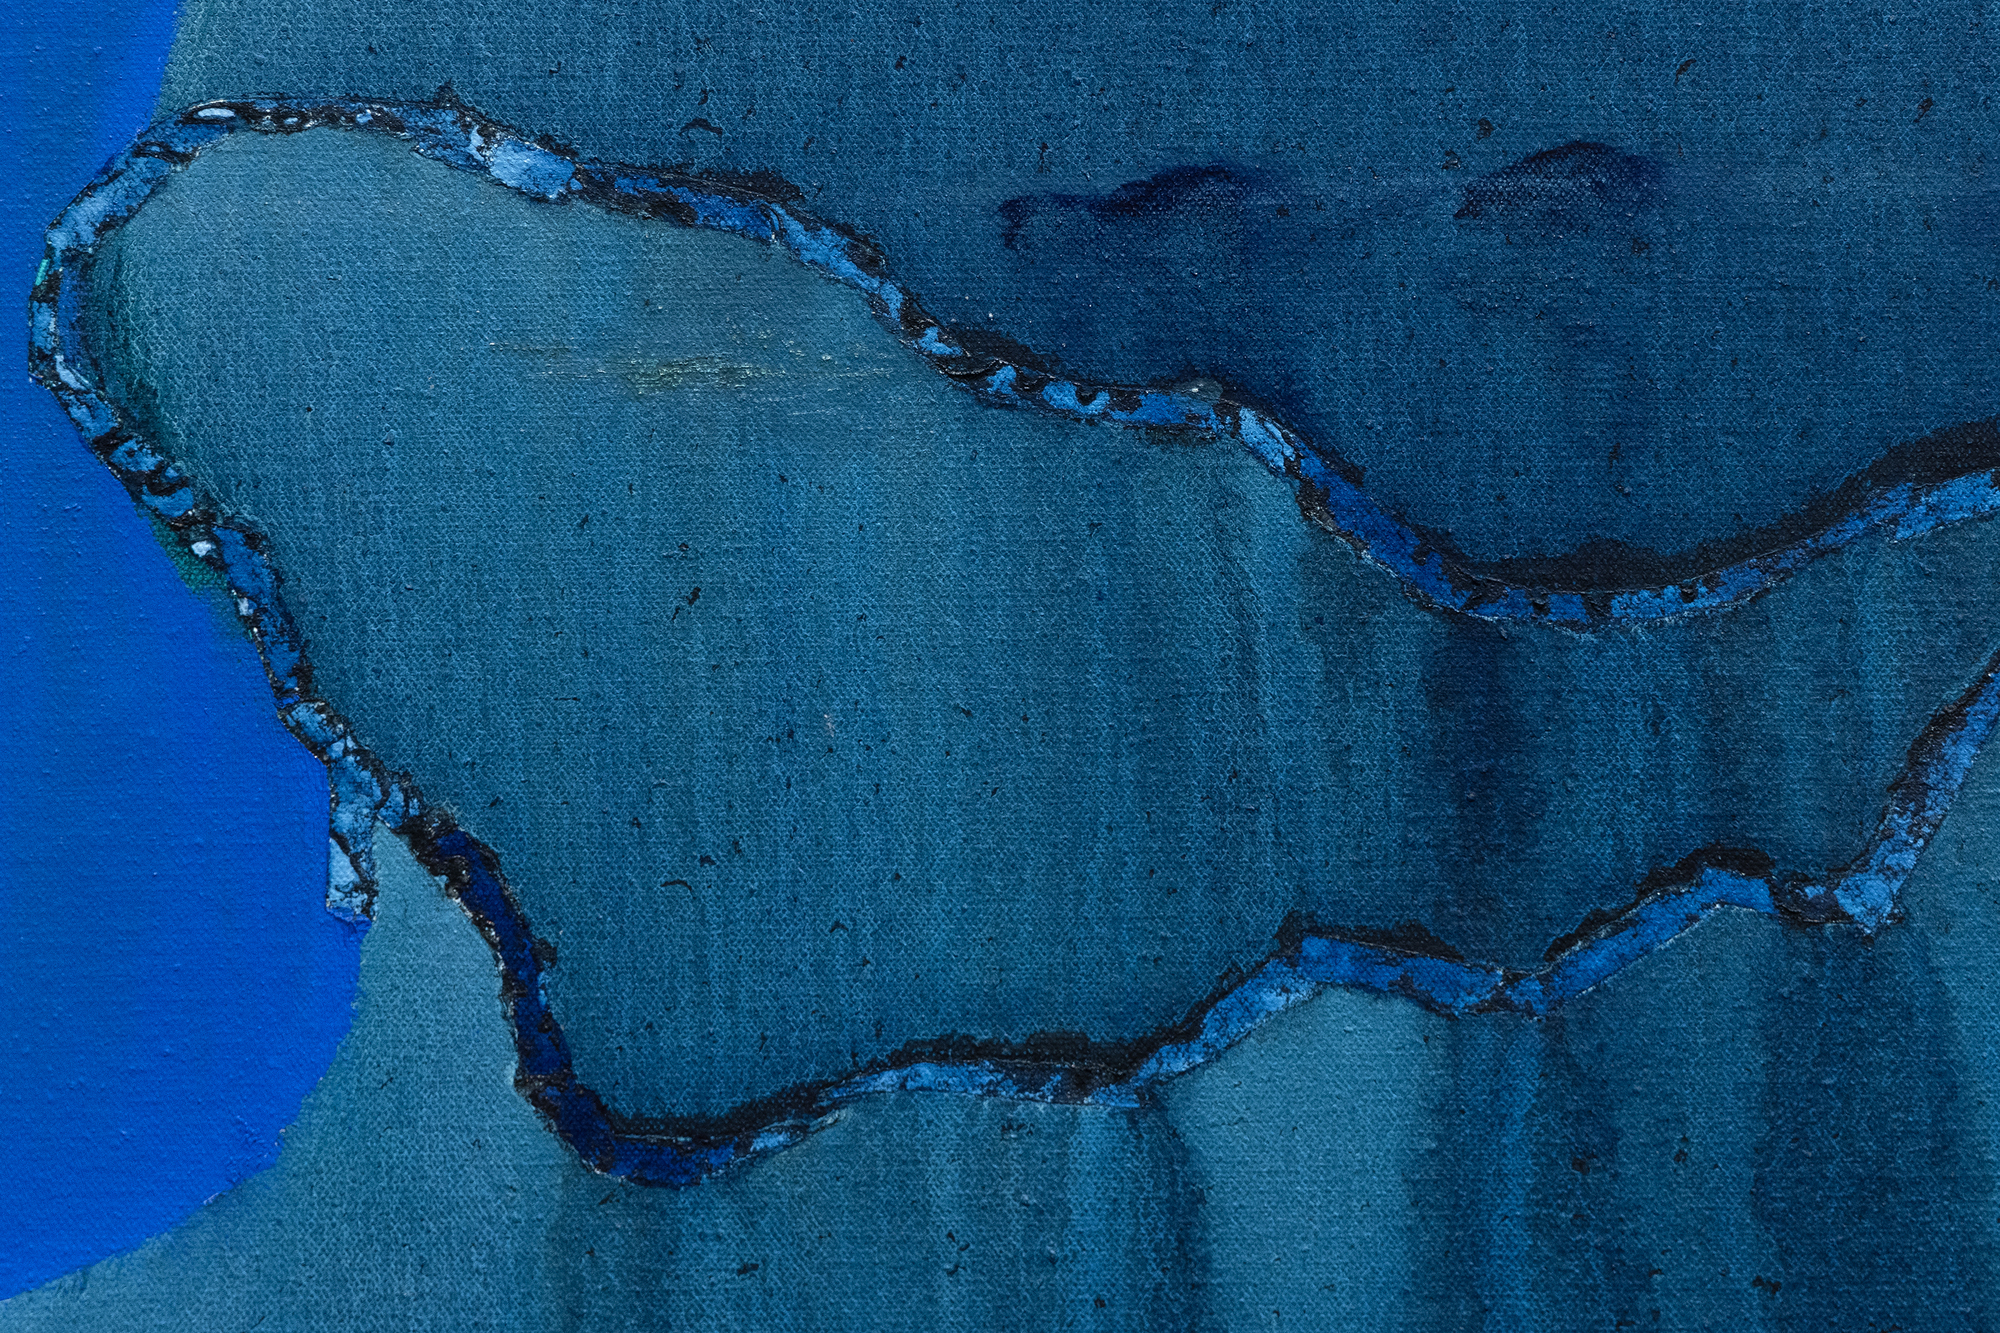 在她成熟的早期，胡德确立了自己作为形而上学图像艺术家的地位，她在 1962 年回到休斯顿后参与了各种宇宙学。《蓝水》是反映她对精神寄托的不懈追求的作品之一。一条饱和的、不透明的蓝色带向前延伸到一个清澈的蓝色蔚蓝球体中，让人联想到一个尘世的水球。这种大胆而和谐的闯入就像一只空灵的手臂，将一种流体状态转化为令人着迷的磷光酞绿，它的华丽和流淌的光彩暗示着神圣的干预，唤起了“上帝之手”的隐喻，为生命的本质注入了活力。胡德对色彩和形式的巧妙运用经常引发对自然界中宇宙或精神拥抱的诠释。然而，她清澈的色彩并没有表现出随机性或不确定性，而是她非凡的掌握和控制力，为《蓝水》增添了另一种敬畏的元素。